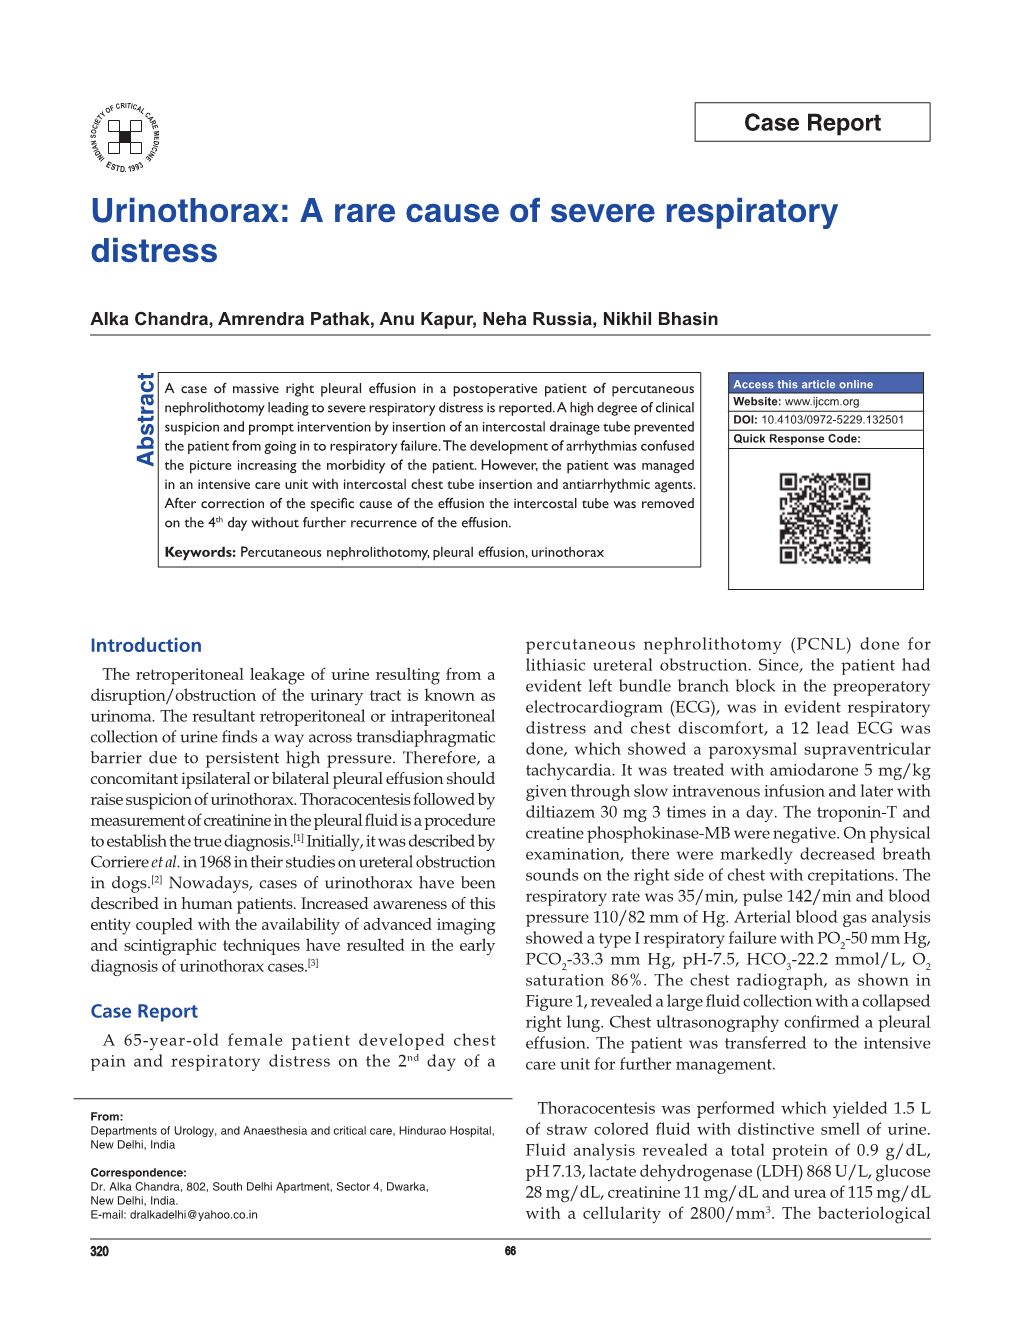 Urinothorax: a Rare Cause of Severe Respiratory Distress